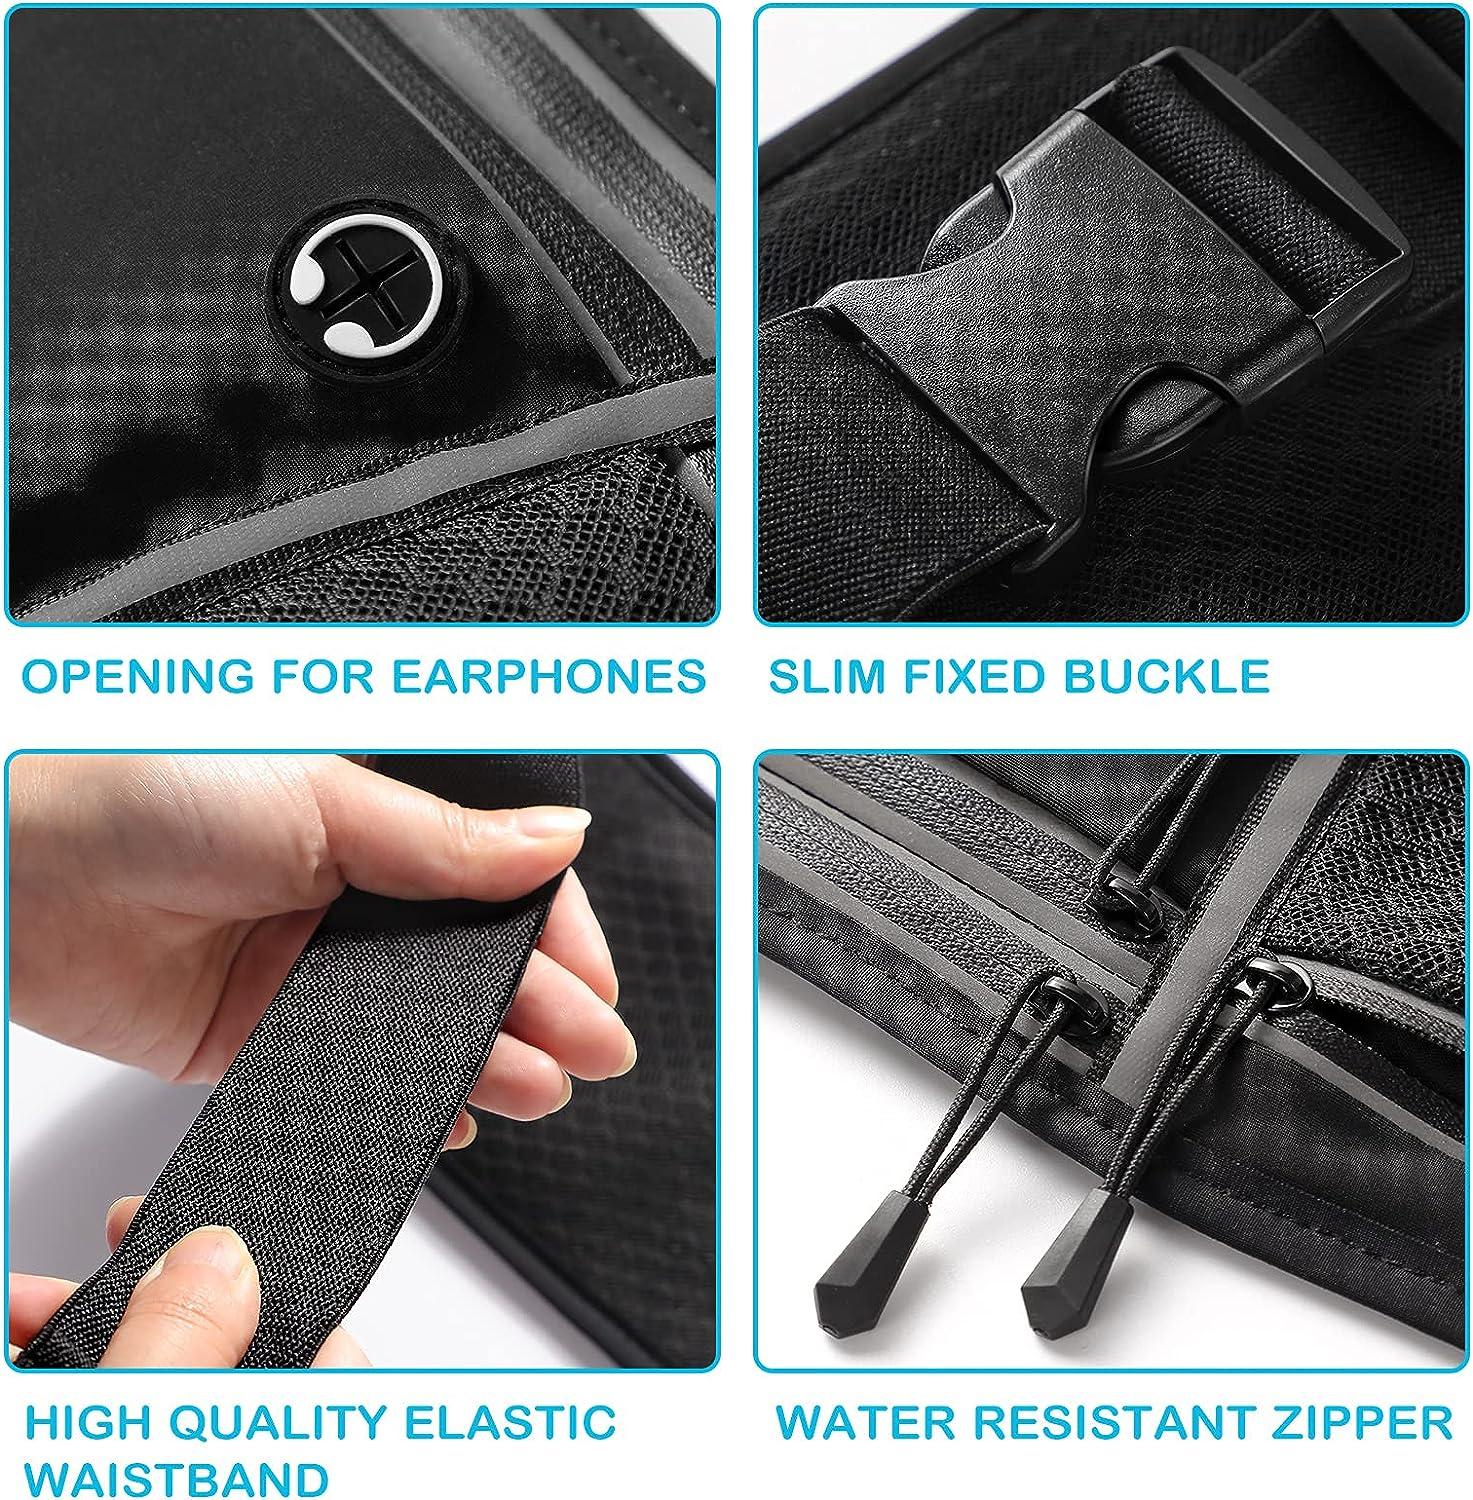 Fanny Pack Extender Belt Bag Adjustable Strap Buckle Waist Extender 